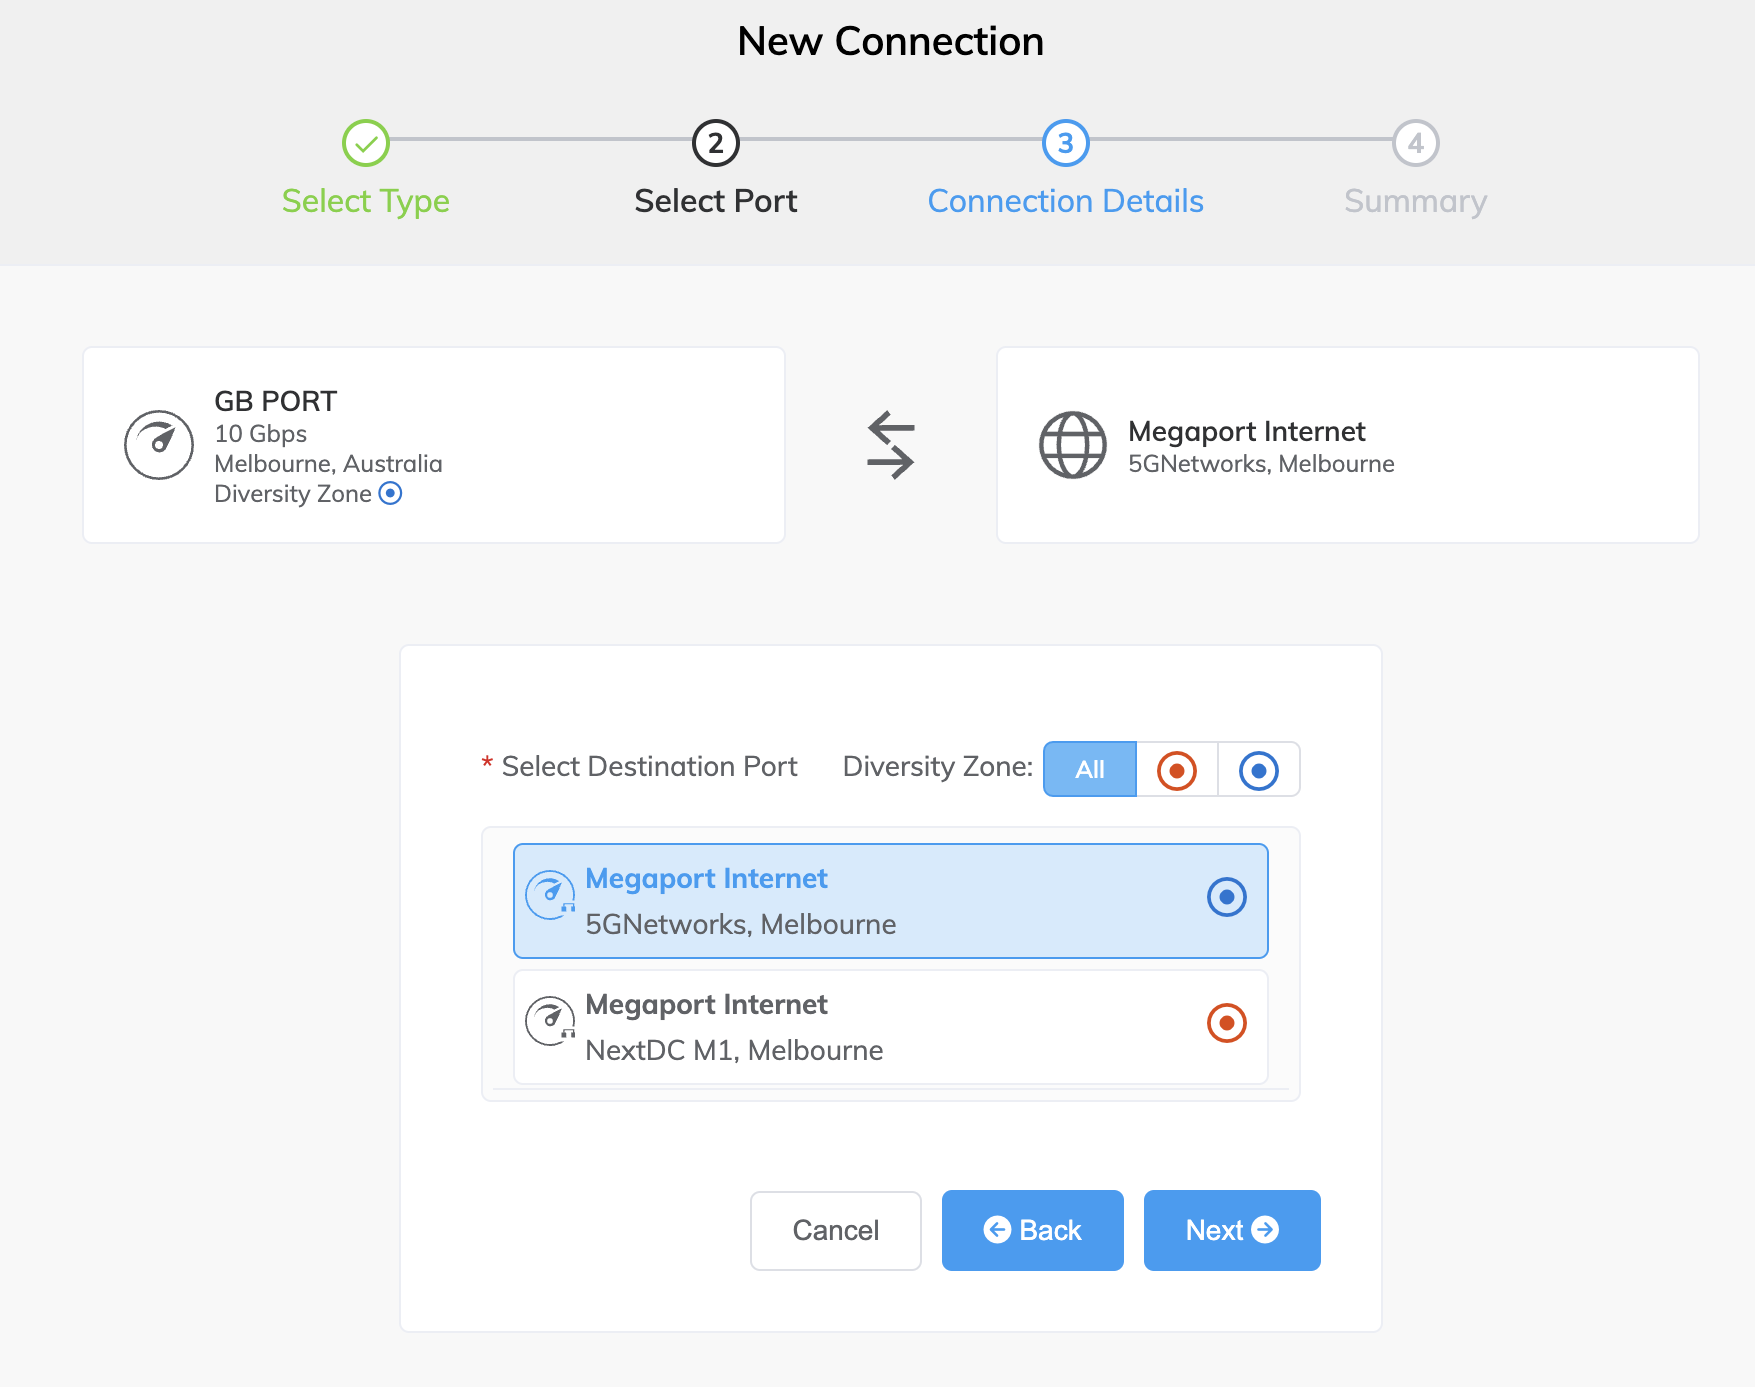 Sélectionnez le routeur IP transit ou B-End pour la connexion Megaport Internet. 